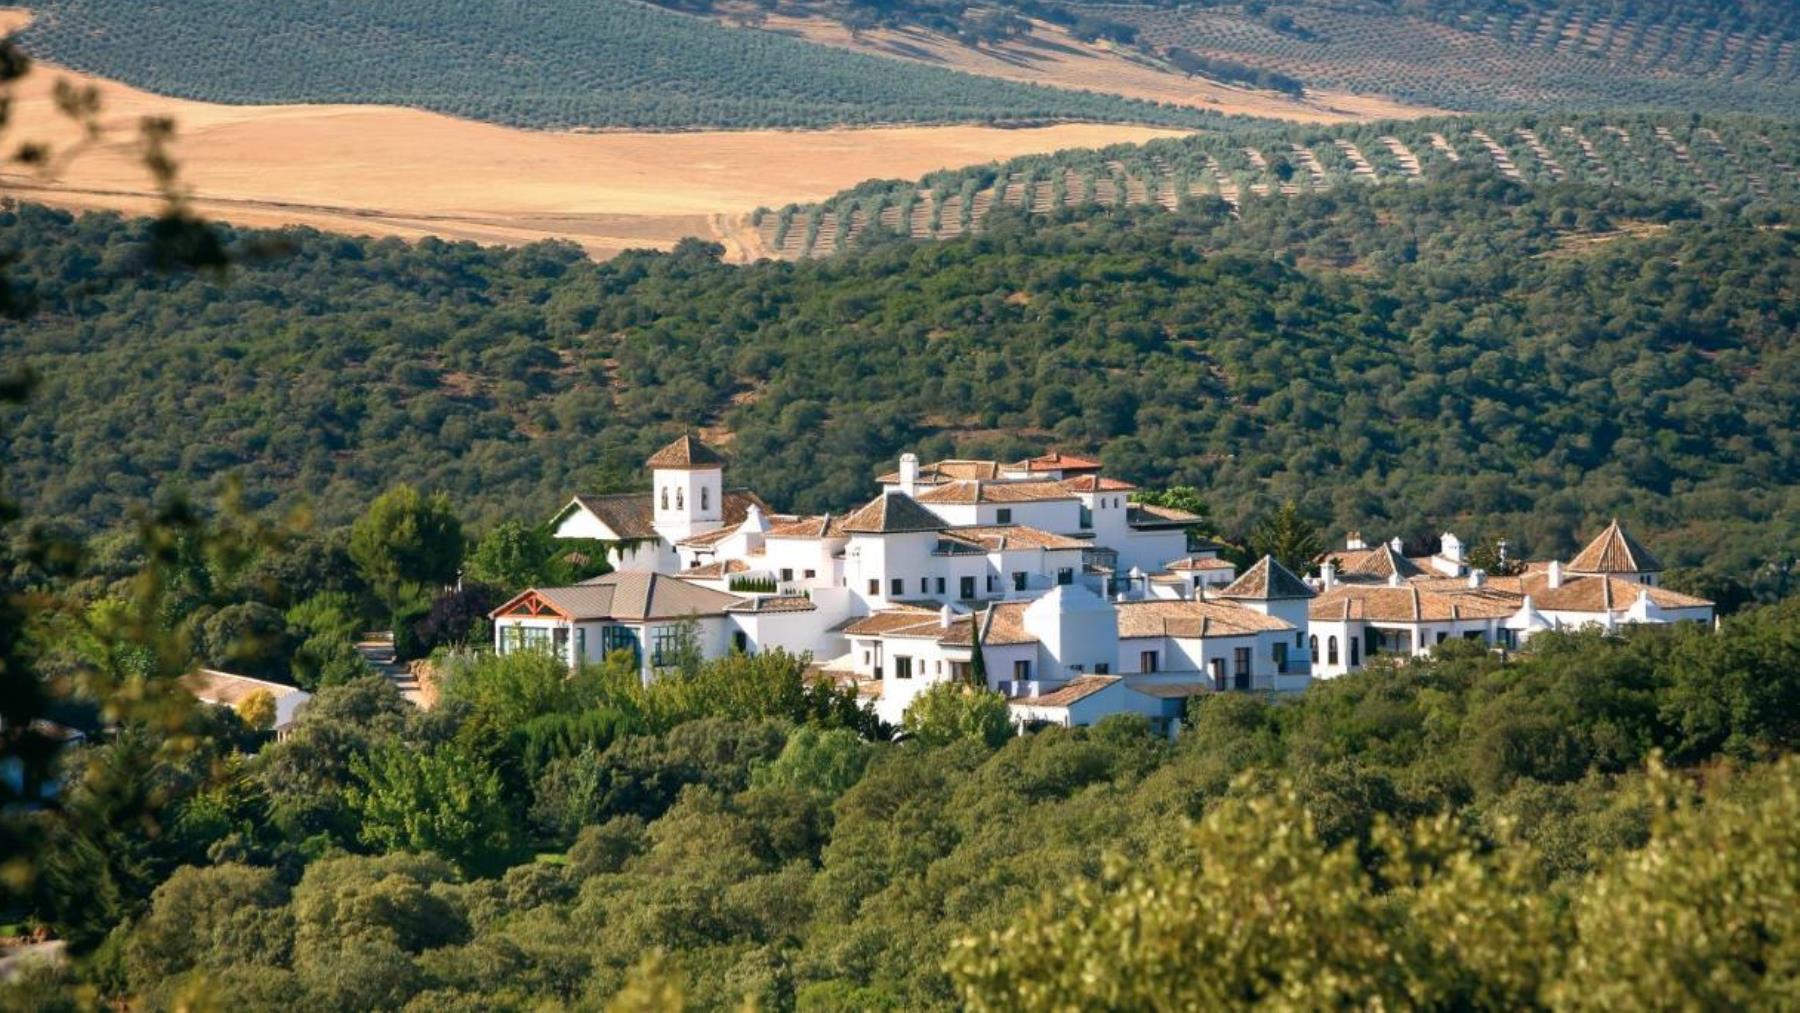 El hotel español elegido por la revista The Times como uno de los mejores para una escapada